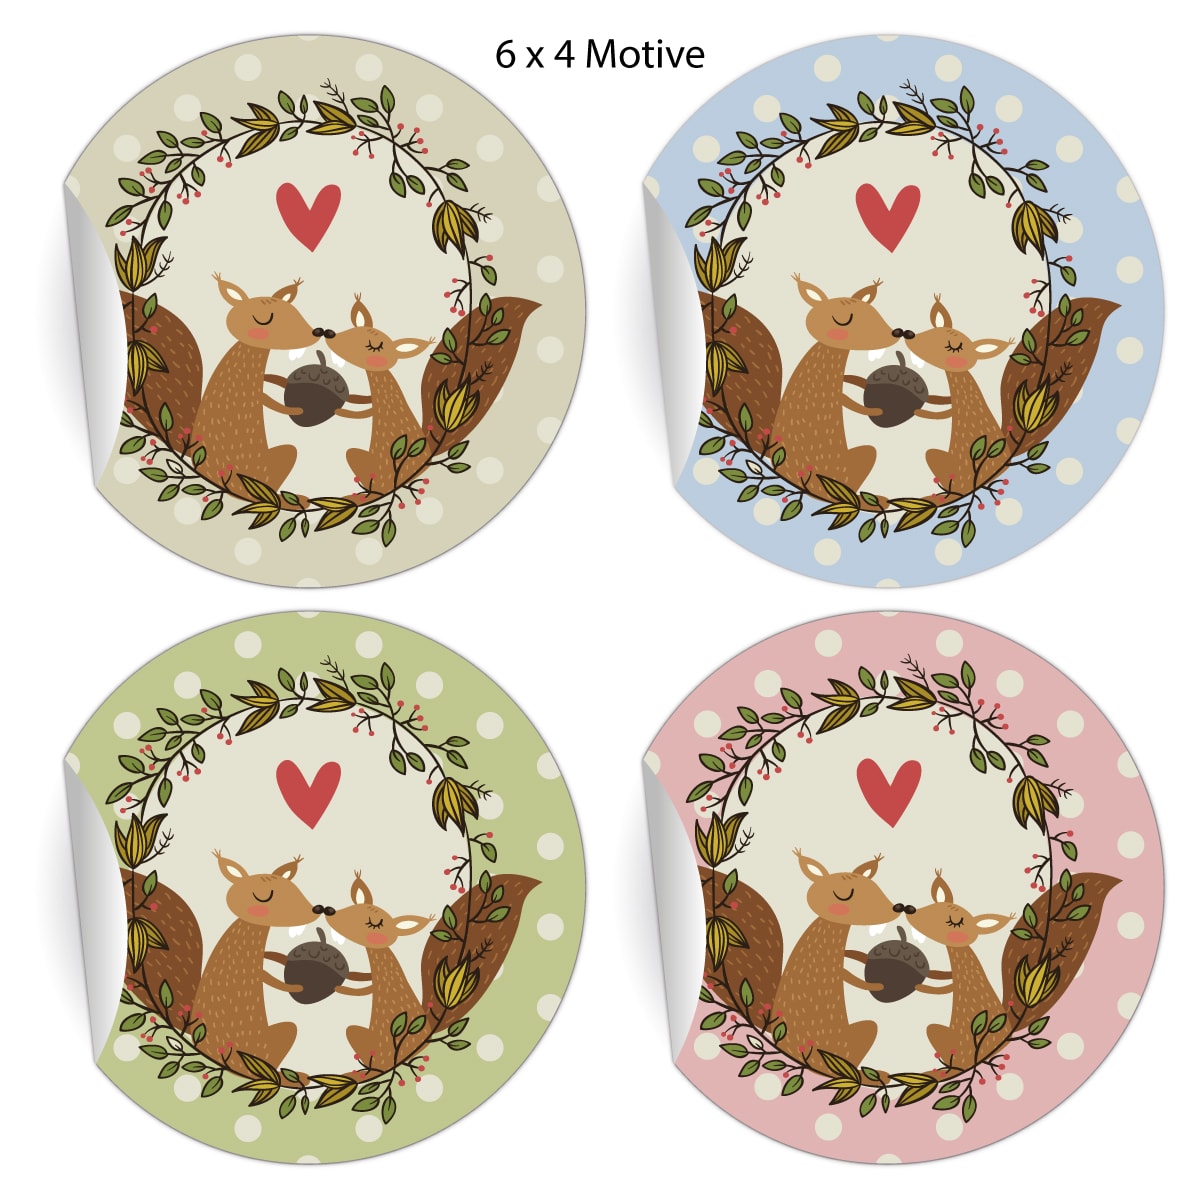 Kartenkaufrausch: Liebes Aufkleber mit verliebten Eichhörnchen aus unserer Weihnachts Papeterie in multicolor